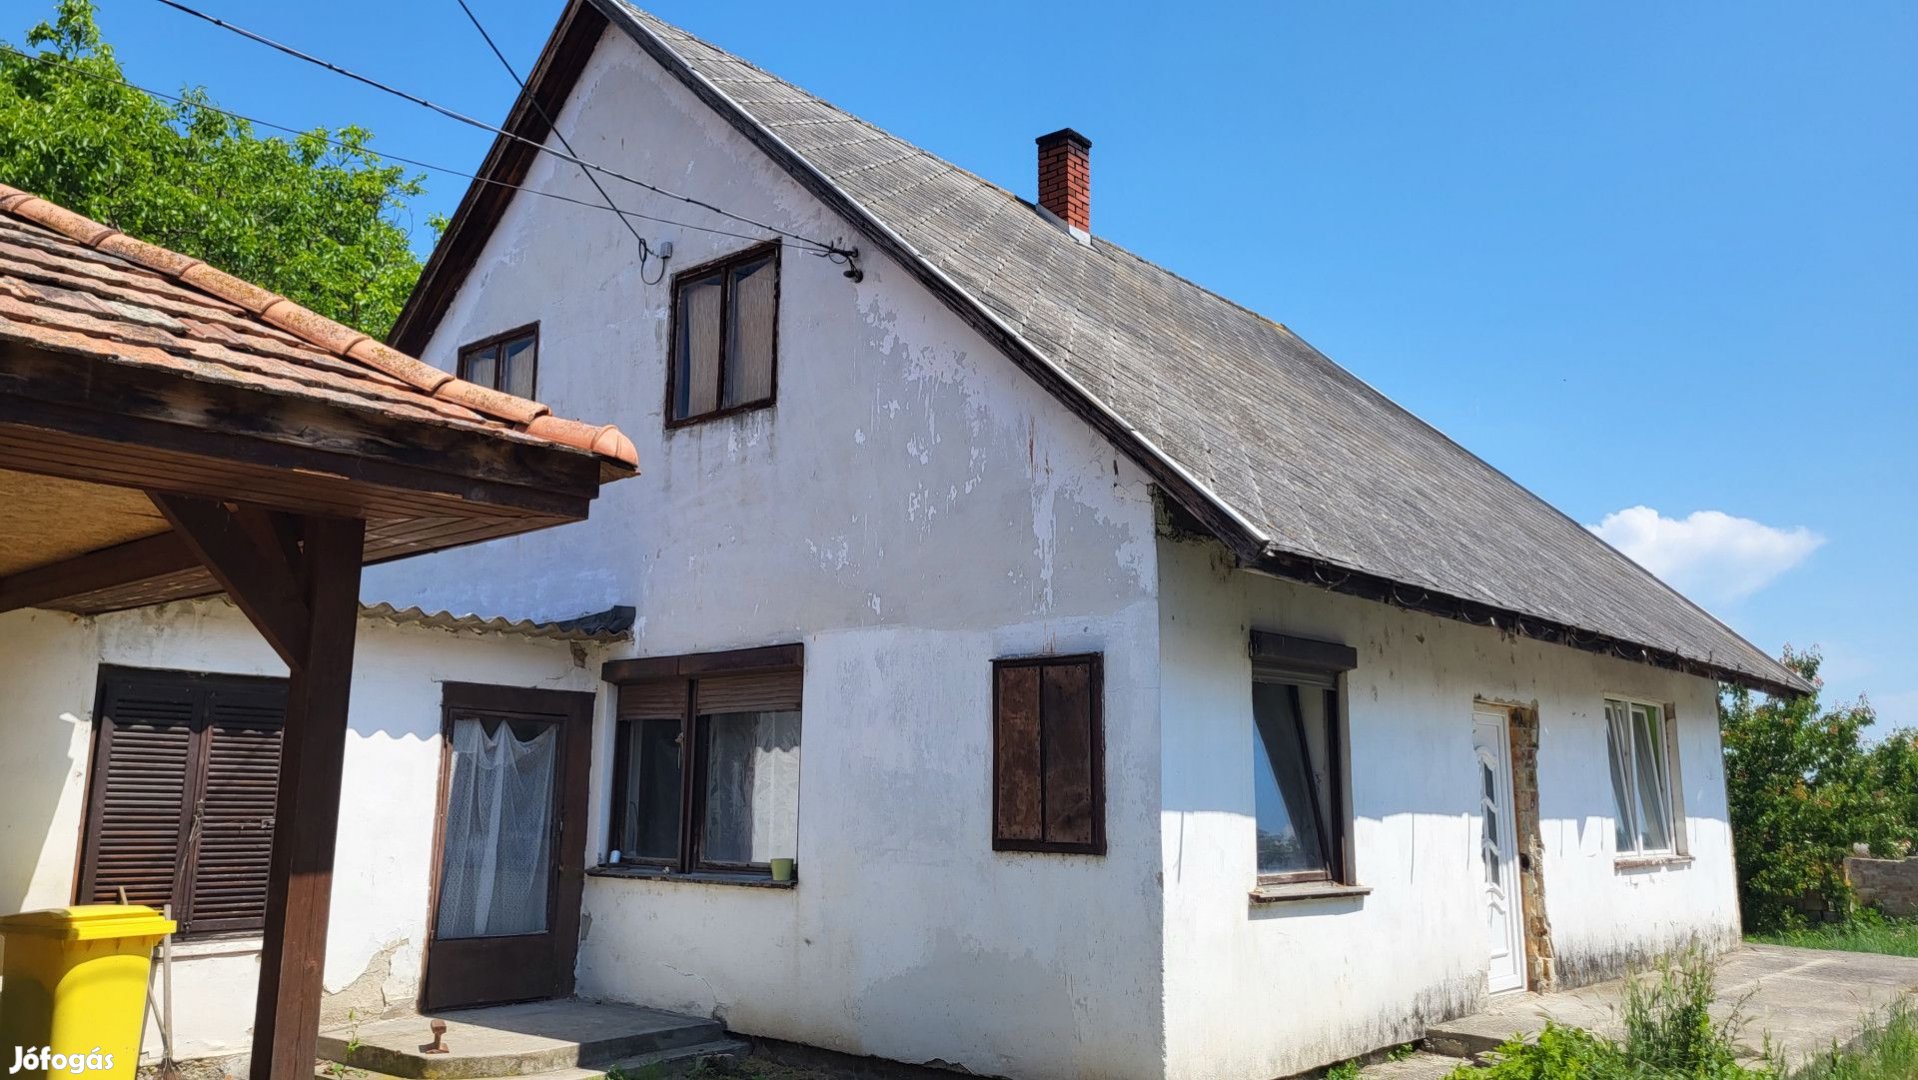 Felújításra szorúló 2 családi ház 1 telken eladó Balatonlellén!!!